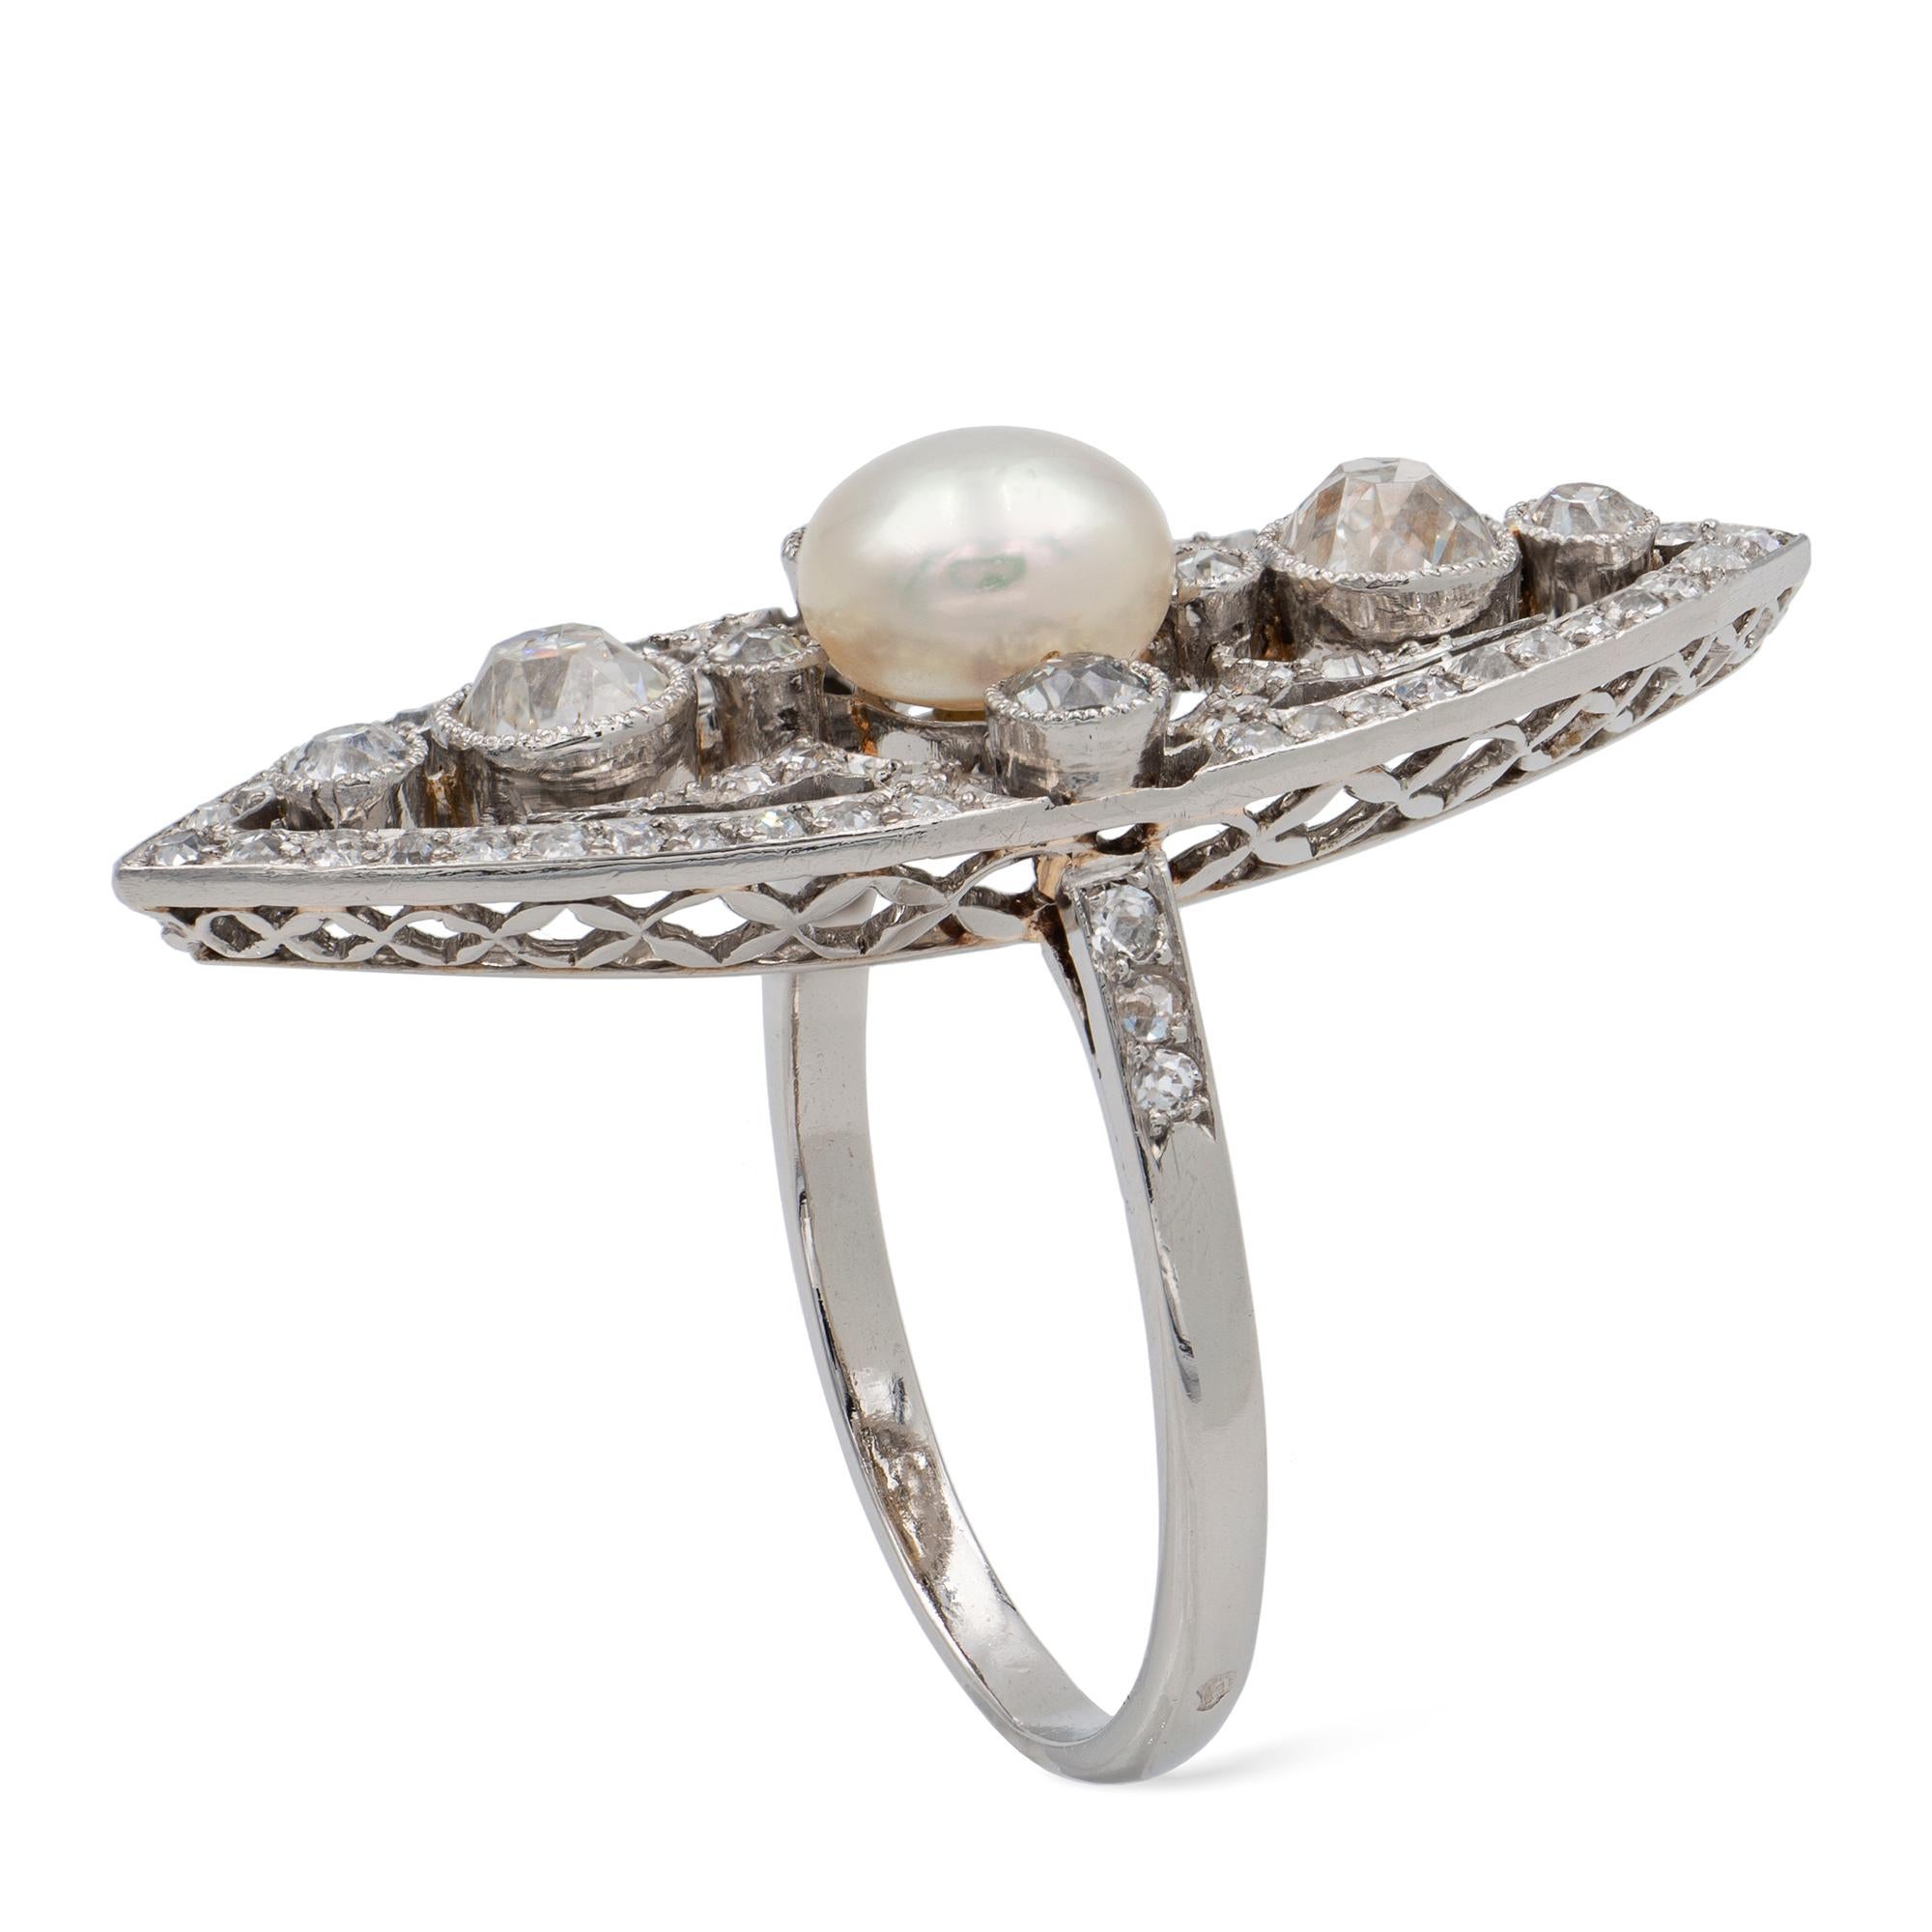 Belle-Epoque-Ring in Form einer natürlichen Perle und einer Diamant-Navette, die Perle misst 6,9-7,0 x 4,8 mm, begleitet von einem GCS-Bericht, der besagt, dass es sich um eine natürliche Perle mit Salzwasser-Ursprung handelt, in der Mitte einer